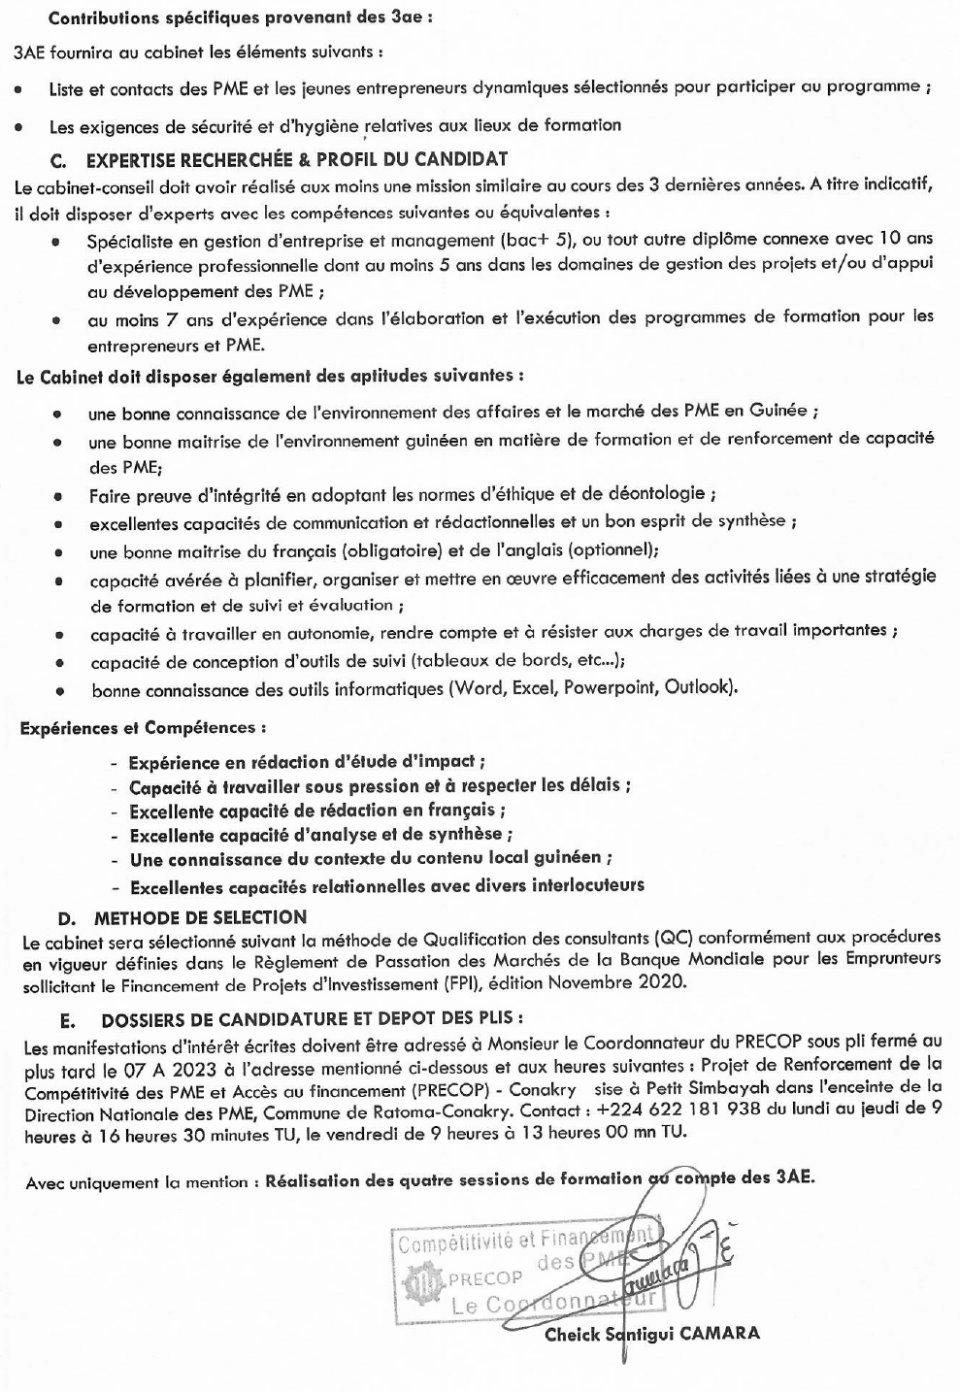 AVIS DE RECRUTEMENT D’UN CABINET POUR LA REALISATION DE QUATRE SESSIONS DE FORMATIONS AU COMPTE DES 3 AE | Page 3